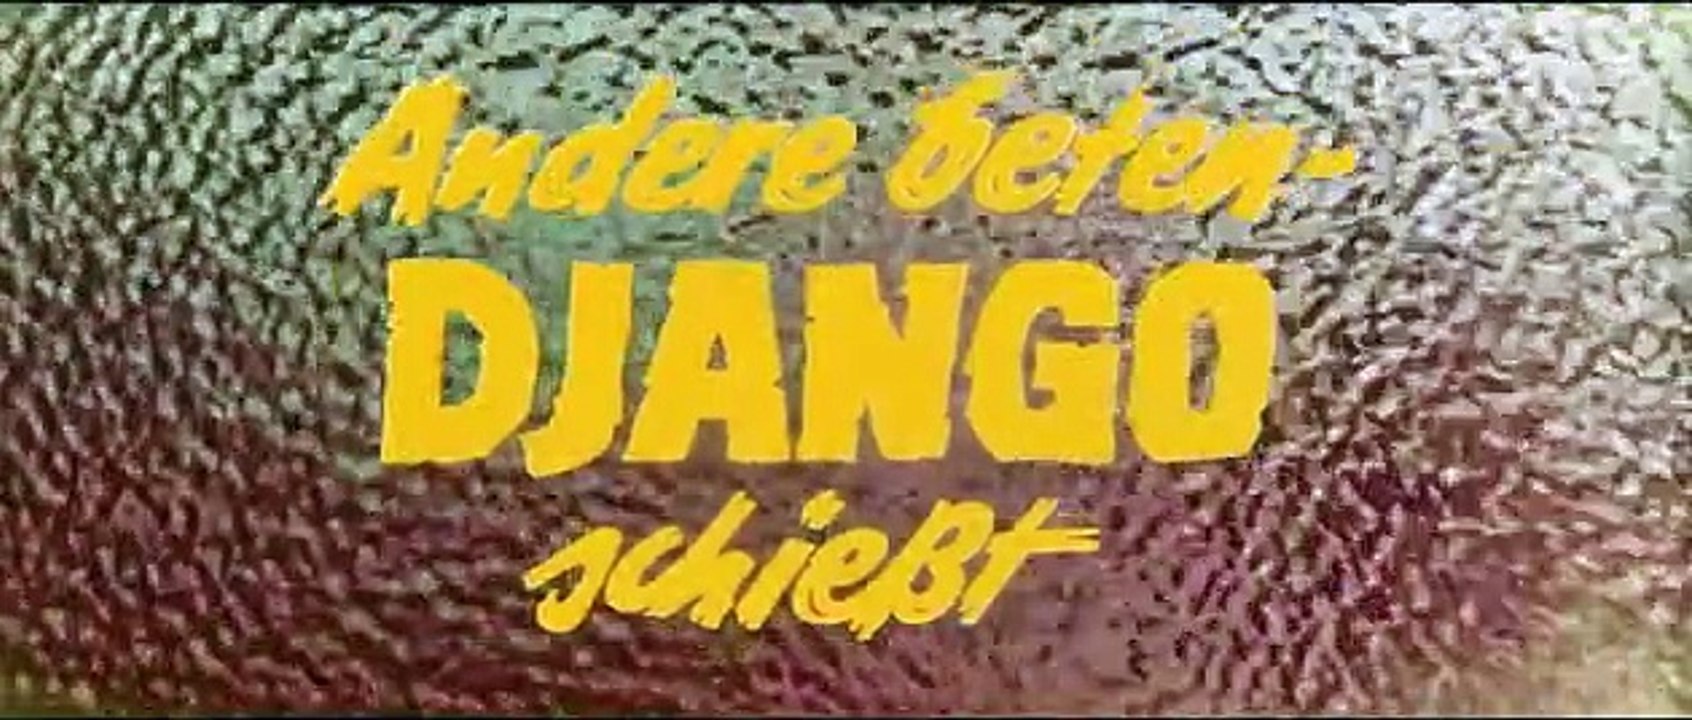 Andere beten - Django schießt | movie | 1968 | Official Trailer